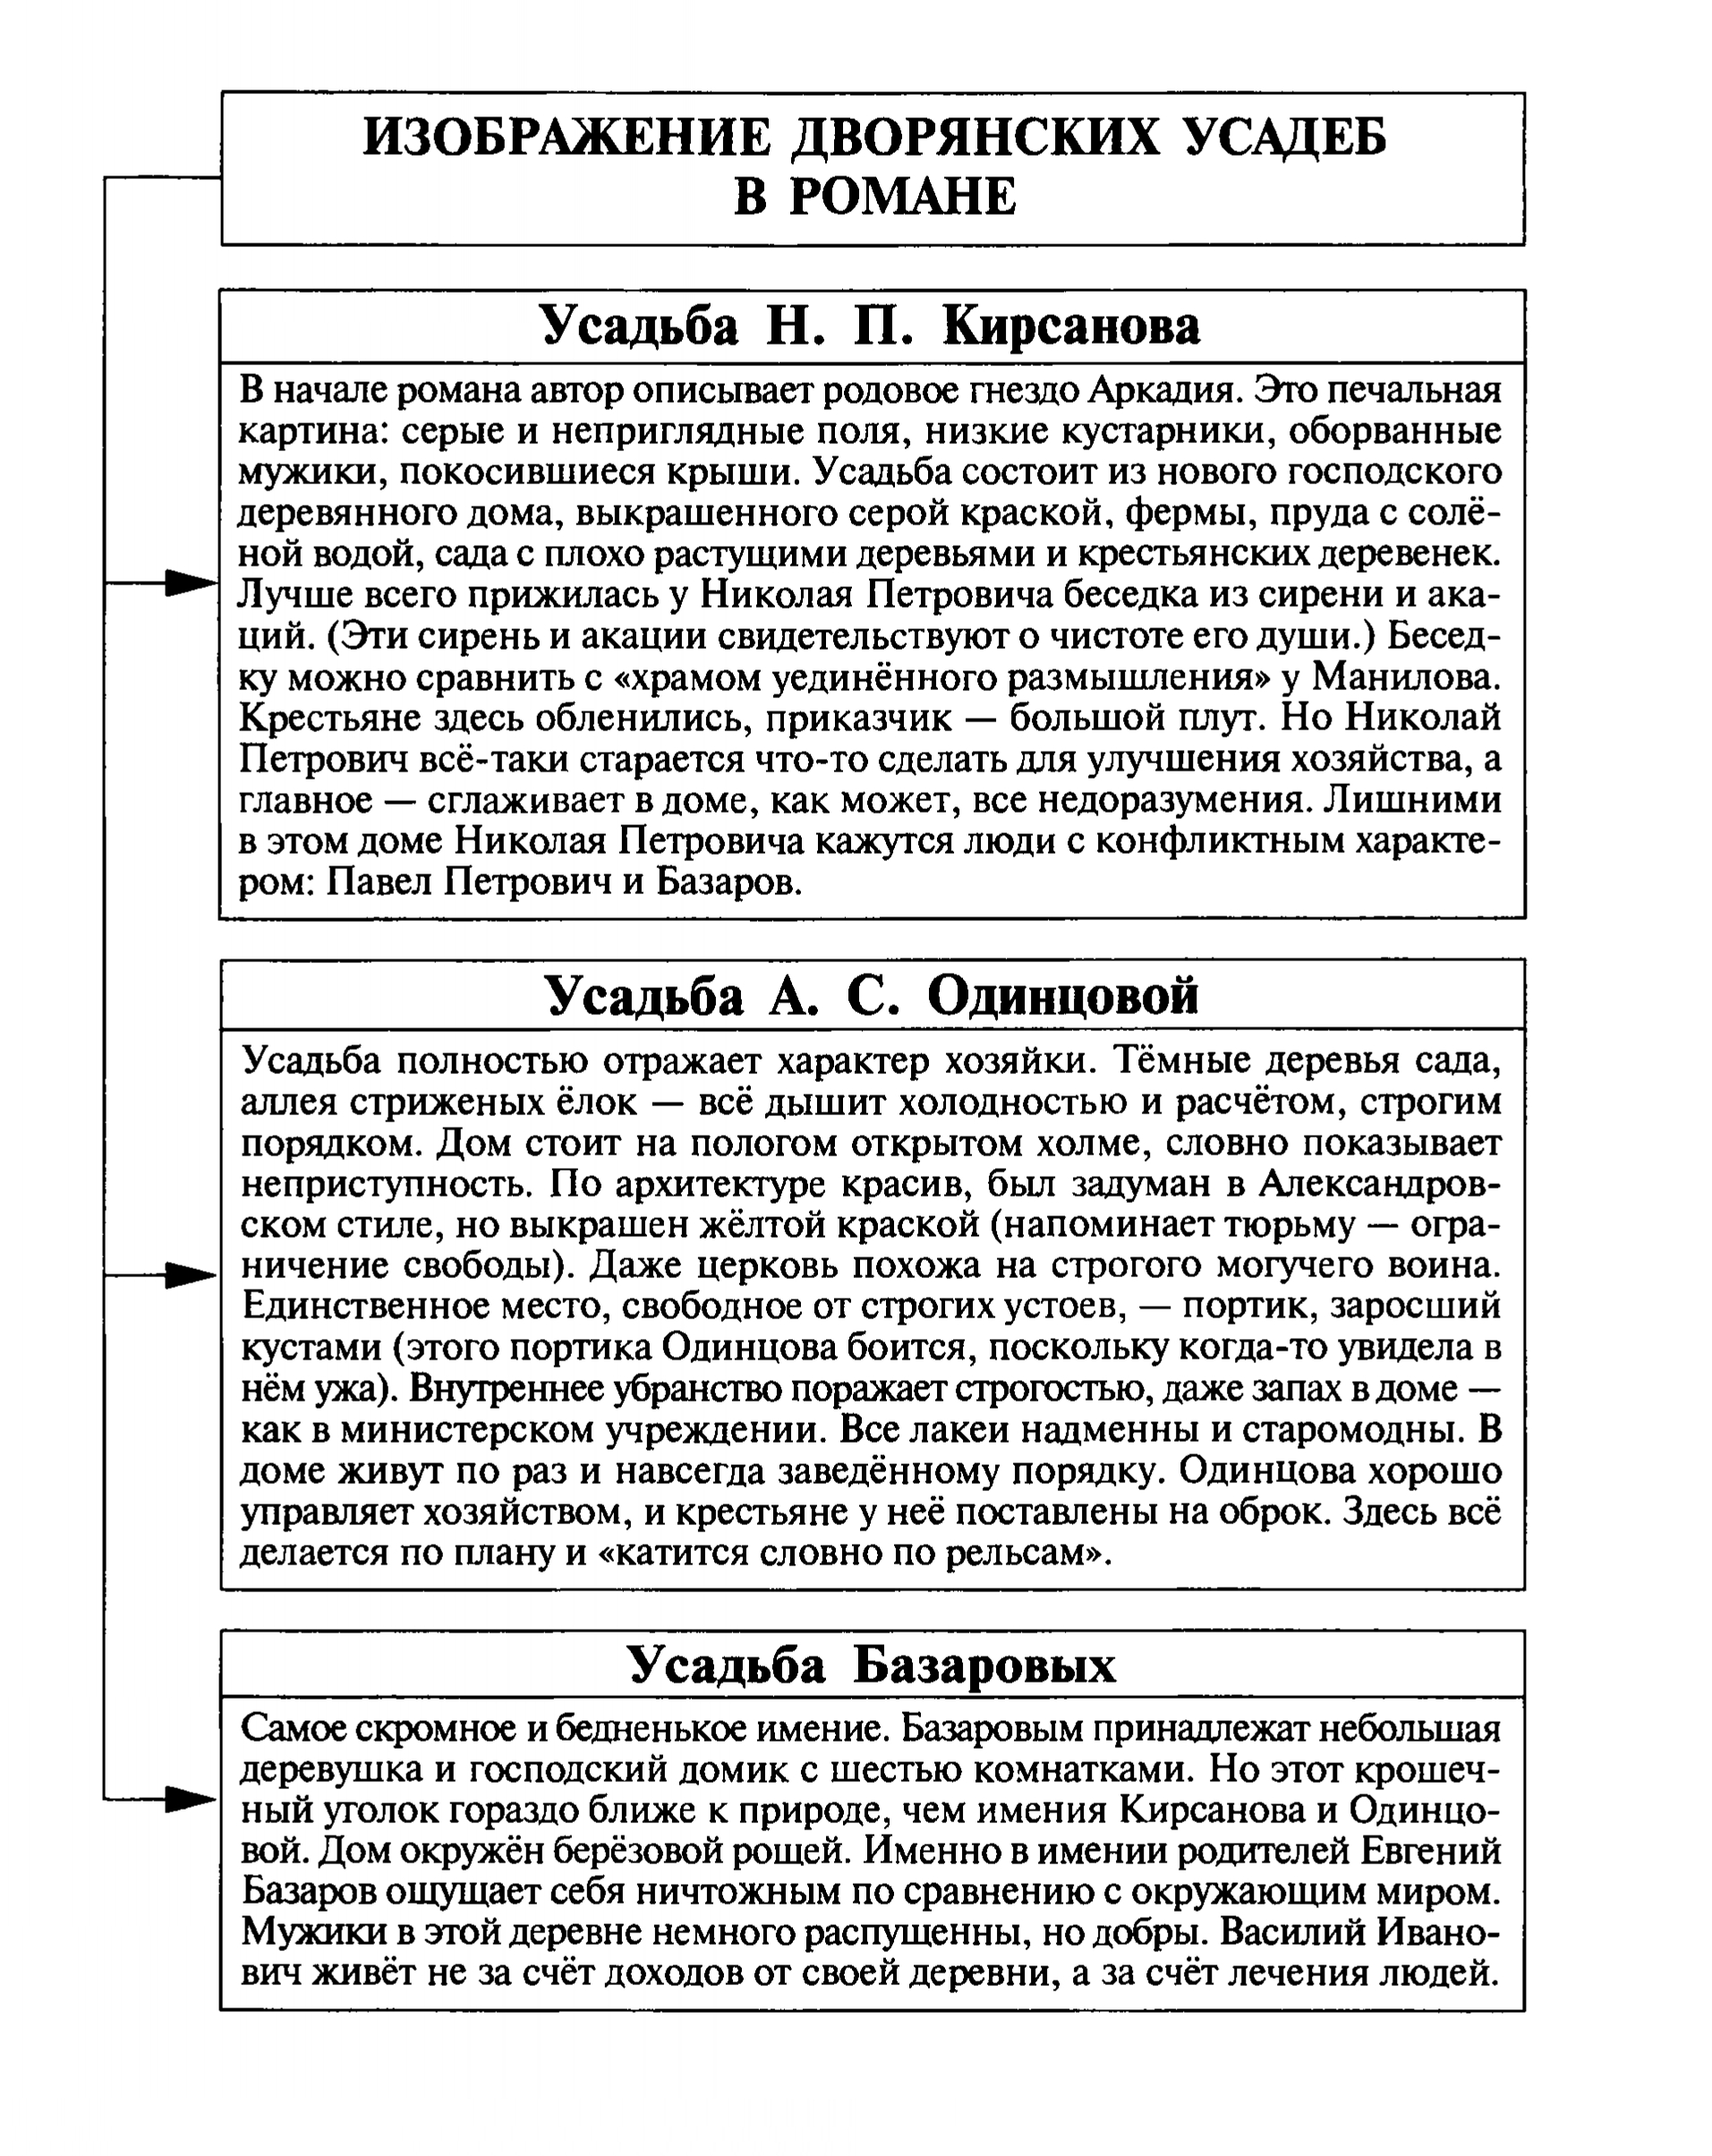 Изображение дворянских усадеб в романе (таблица)